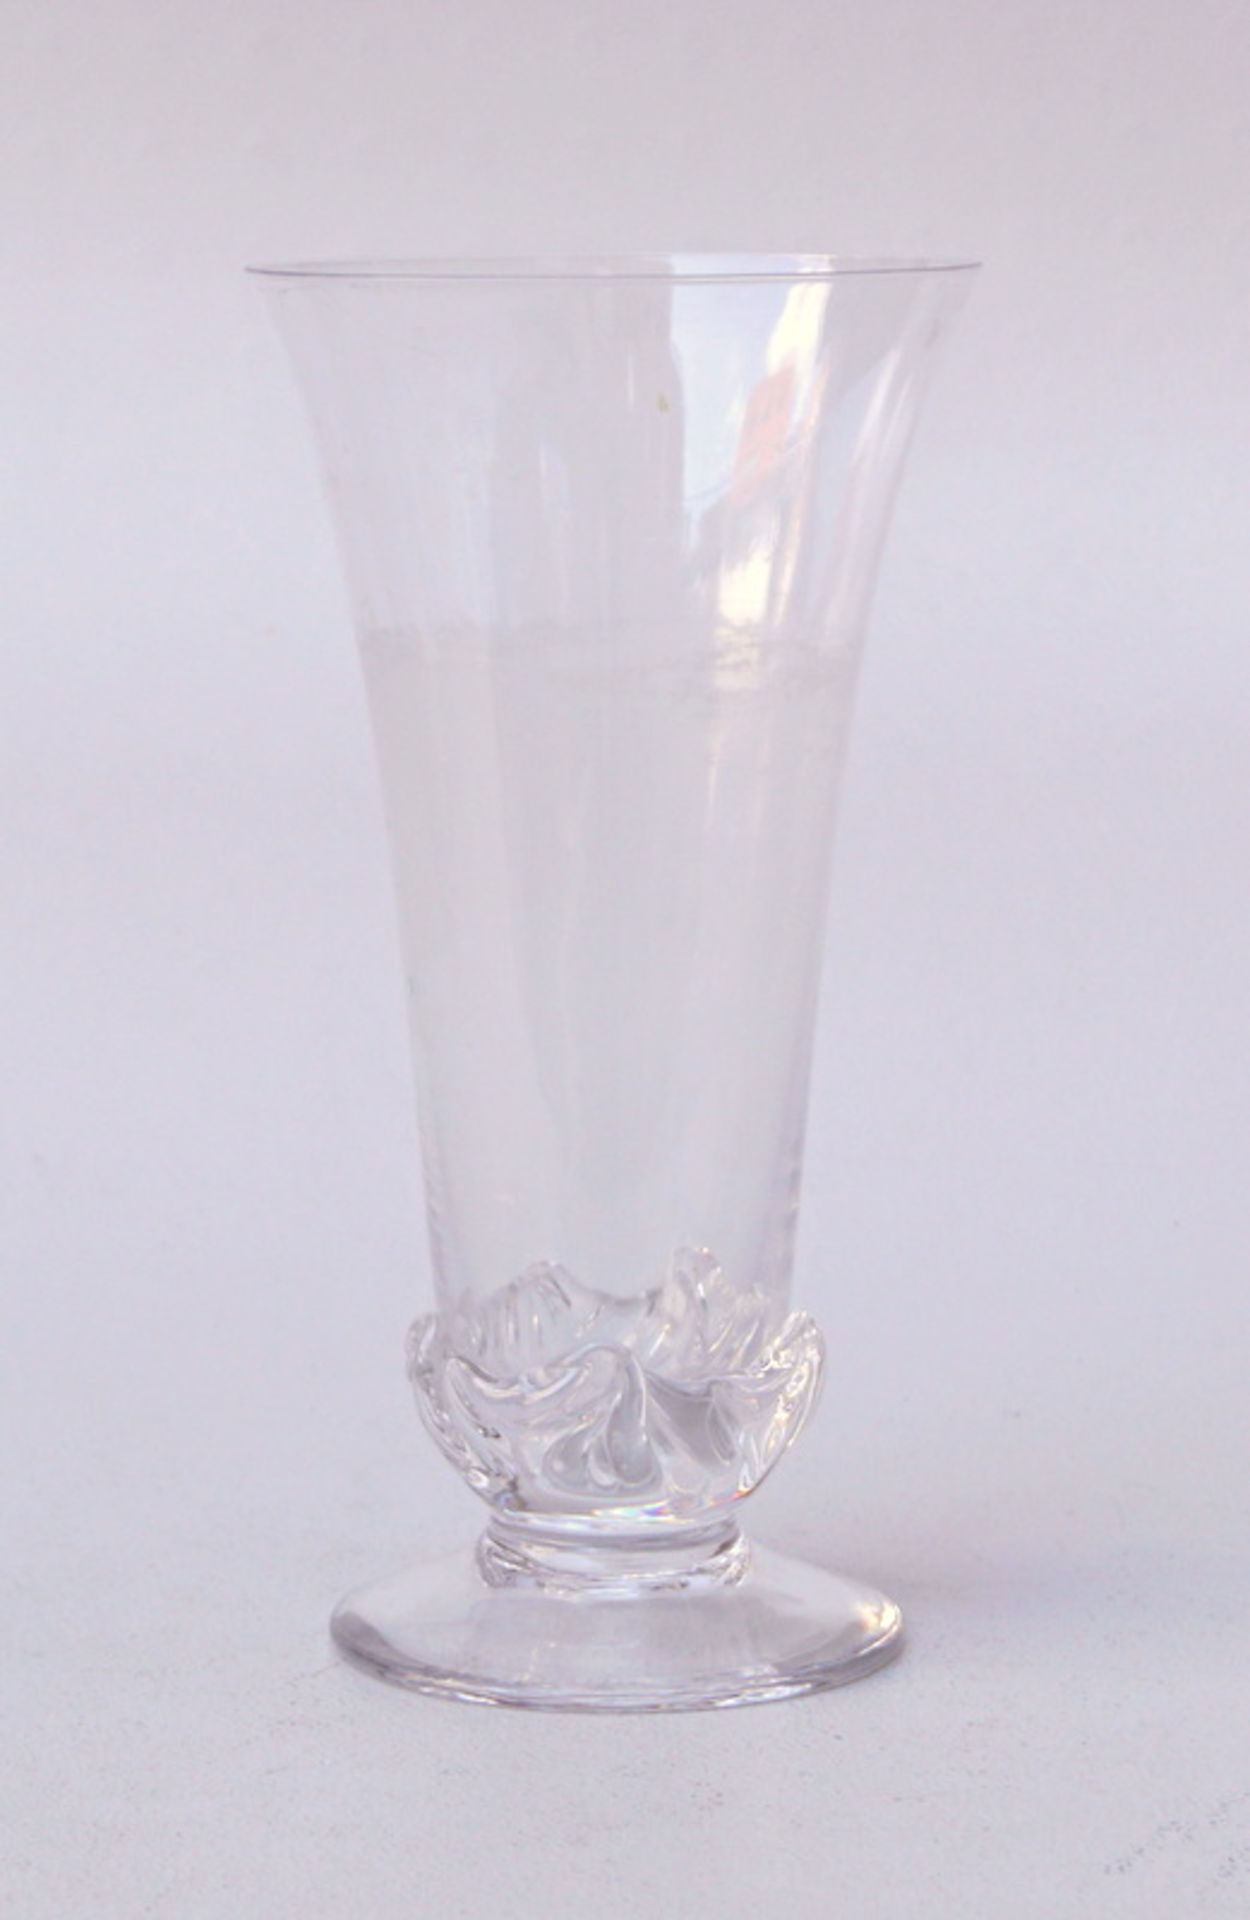 Daum, Nancy: Vase, Frankreich, 20. Jhd.Konisch zusammenlaufende Vase aus Kristallglas, mit